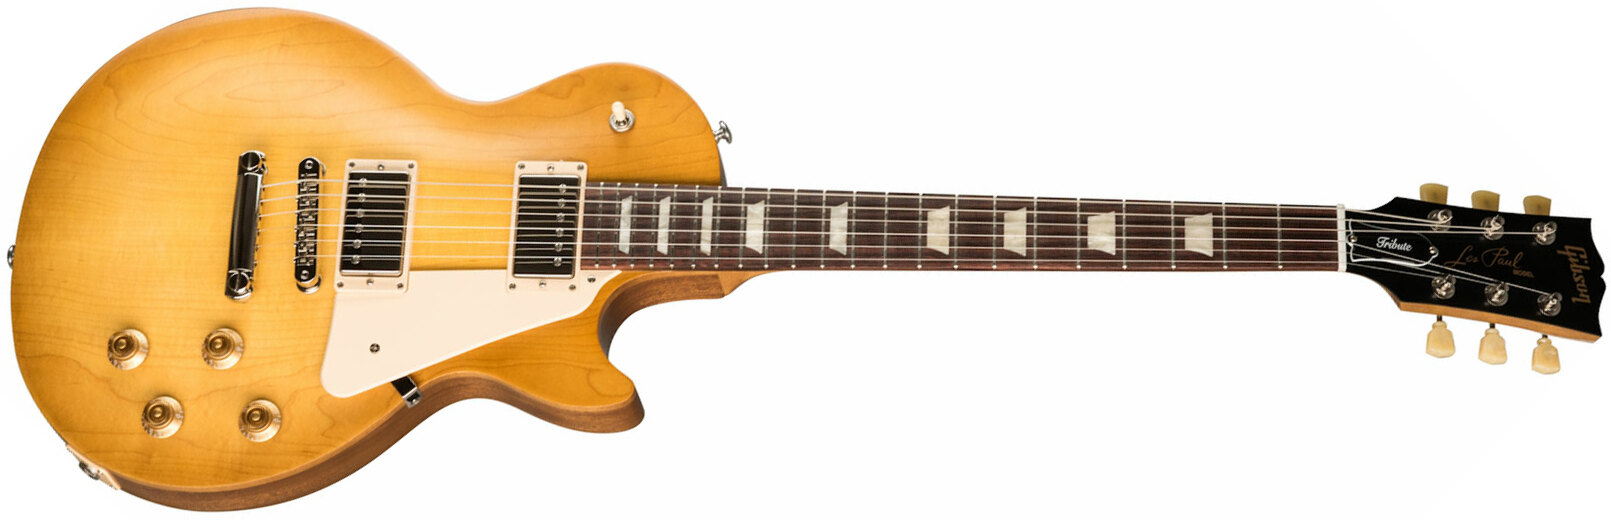 Gibson Les Paul Tribute Modern 2h Ht Rw - Satin Honey Burst - Guitarra eléctrica de corte único. - Main picture